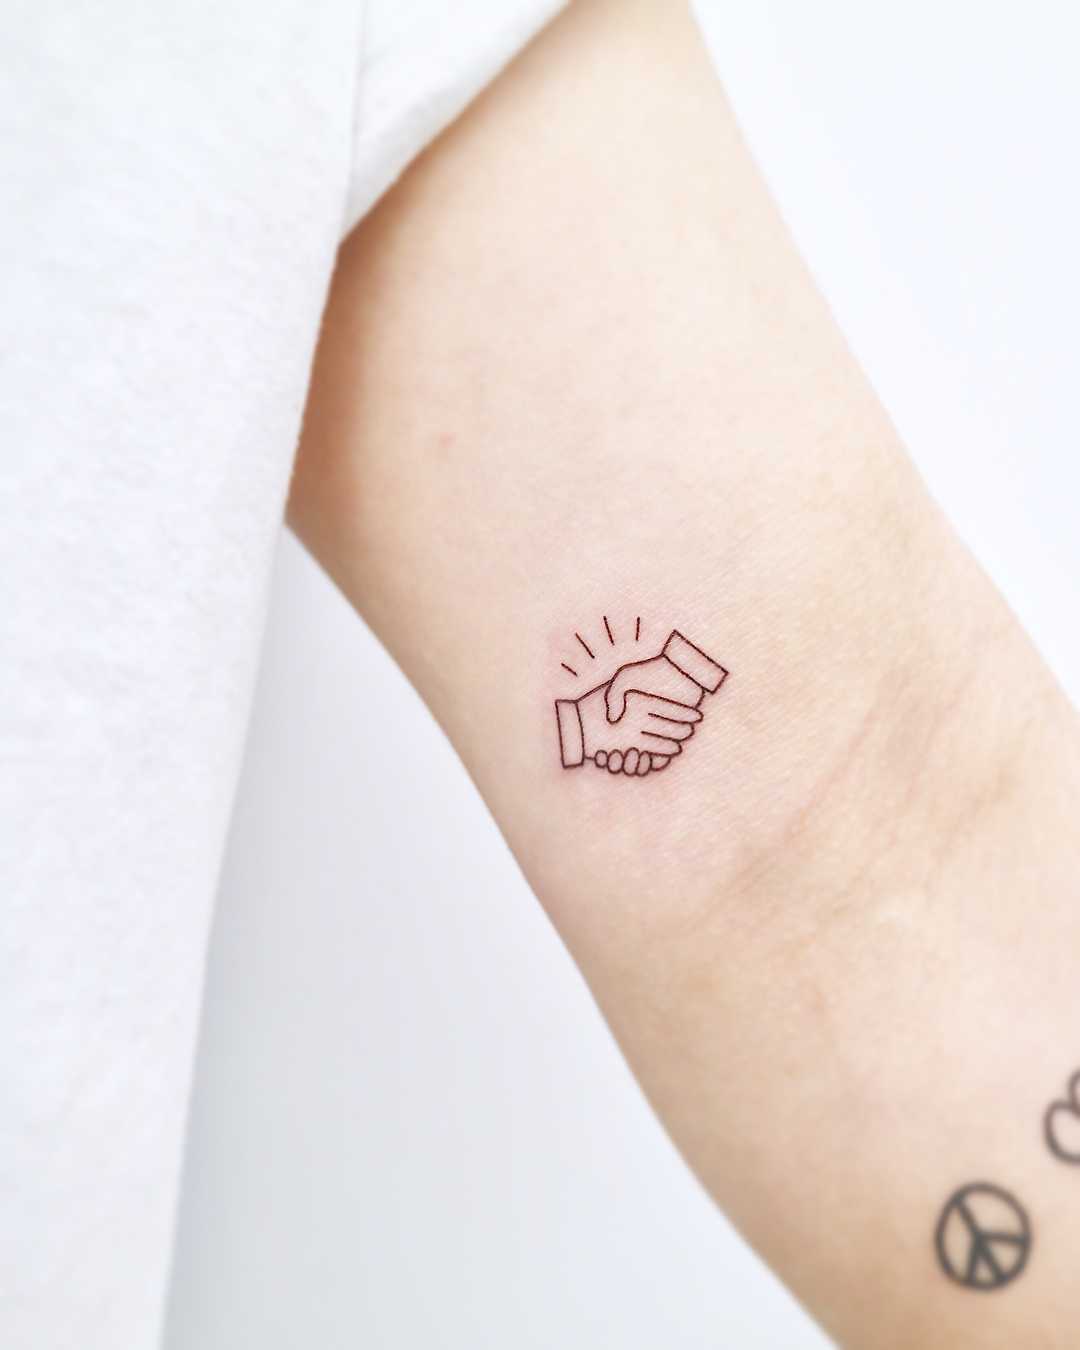 Small handshake tattoo by tattooist Nemo